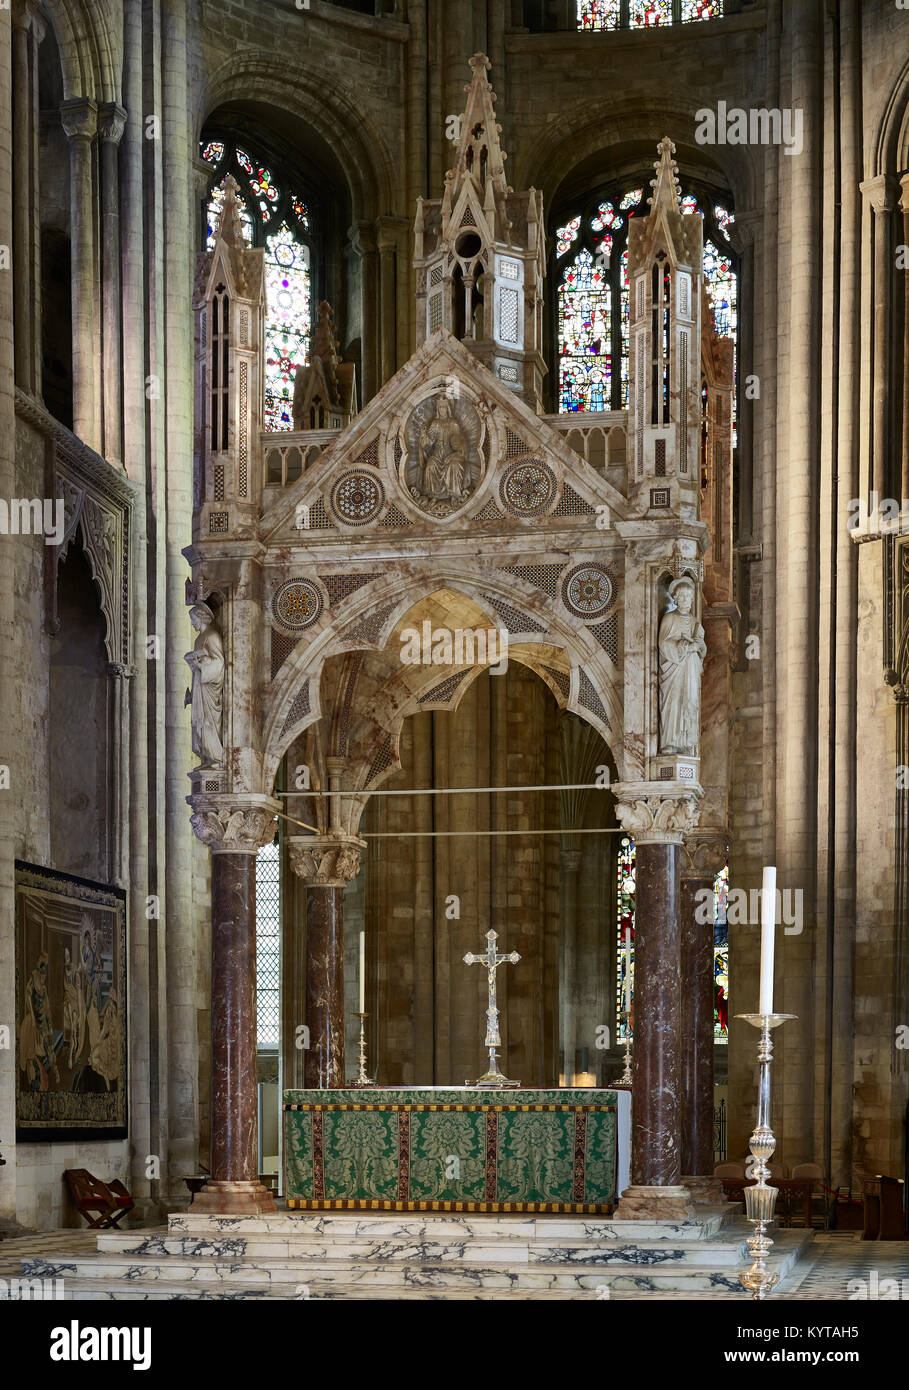 La catedral de Peterborough. Presbiterio mirando al oriente, Alabastro baldacchino de 1893-4 por J.L. Pearson Foto de stock